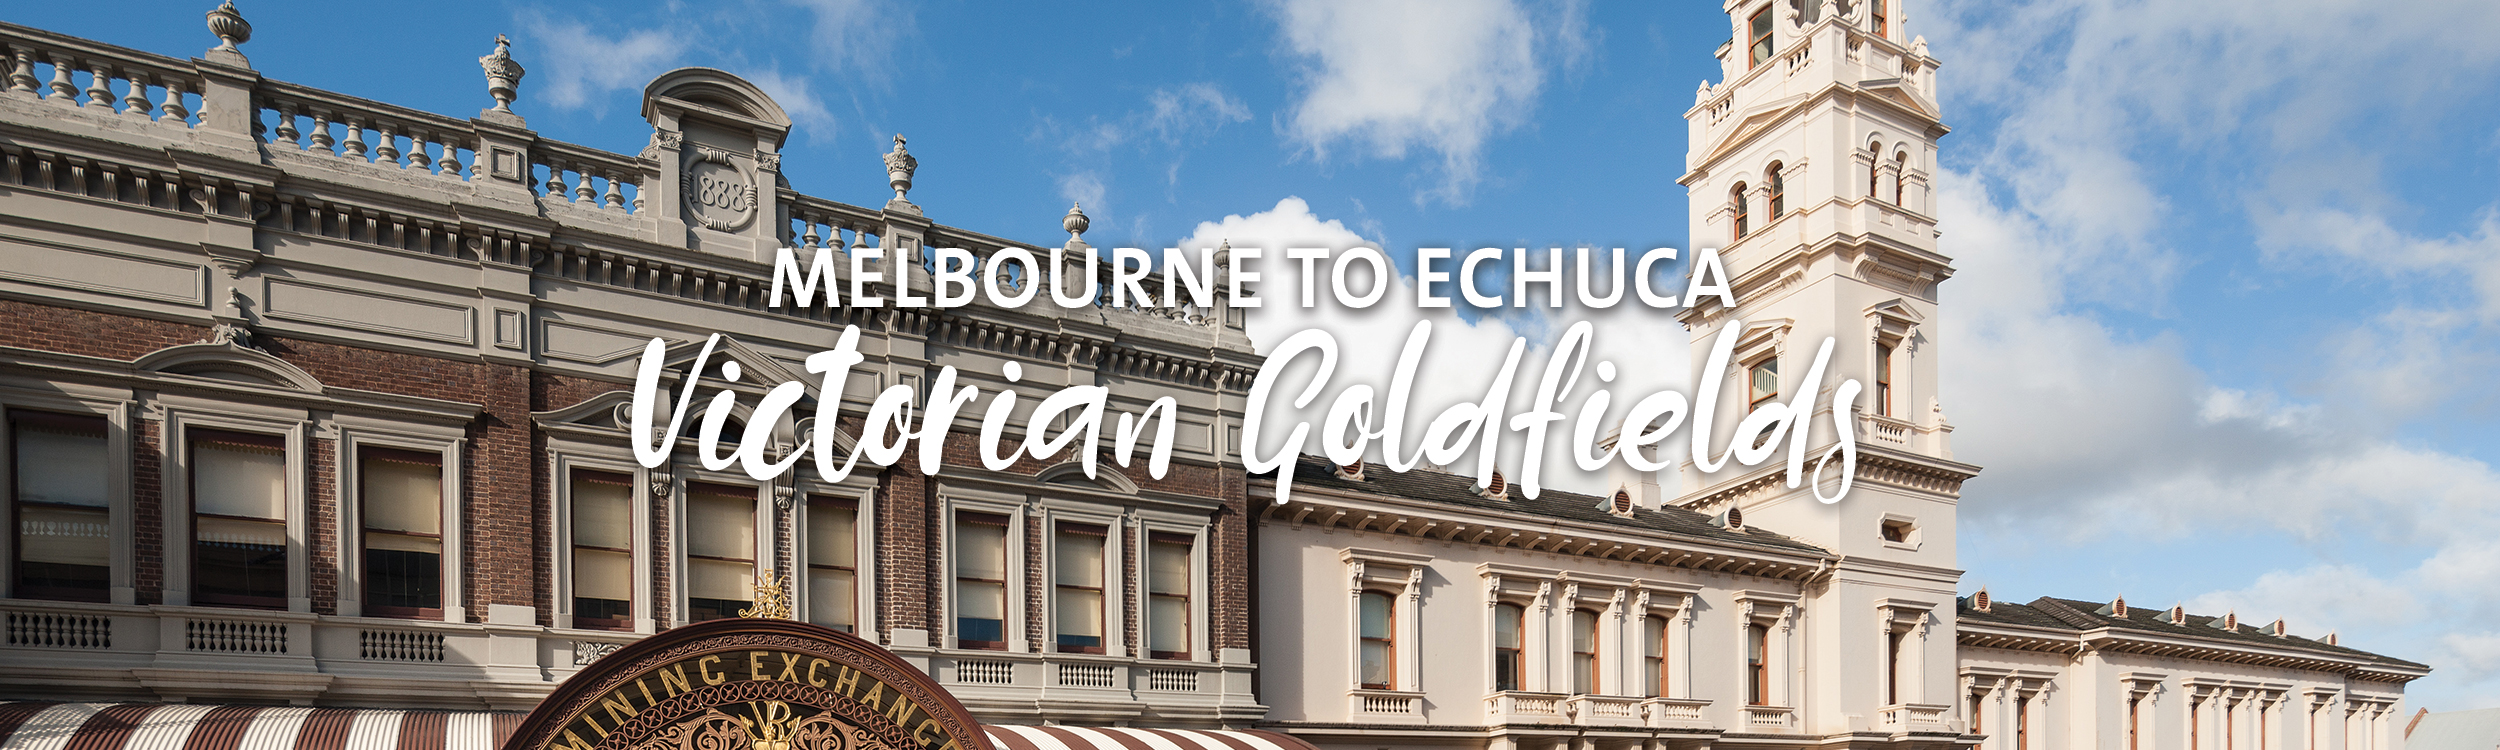 Melbourne to Echuca Roadtrip